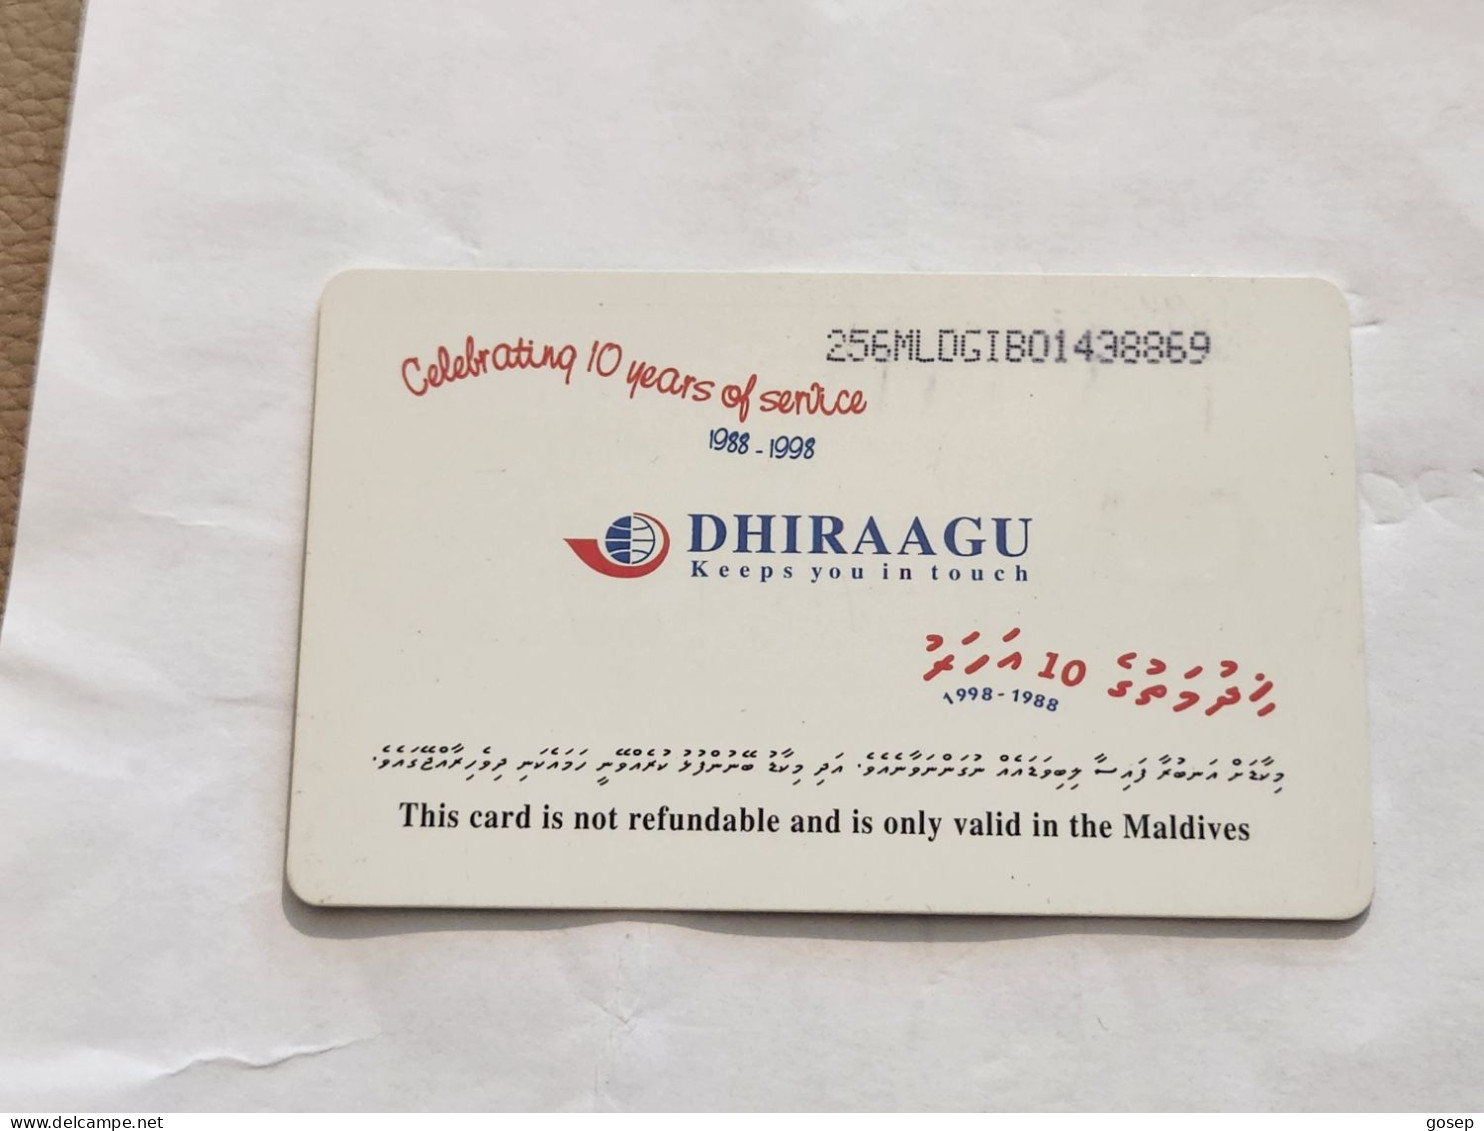 Maldives-(256MLDGIB-MAL-C-01)-save The Turtle-(42)-(RF30)-(256MLDGIB01438869)-used Card+1card Prepiad Free - Maldive